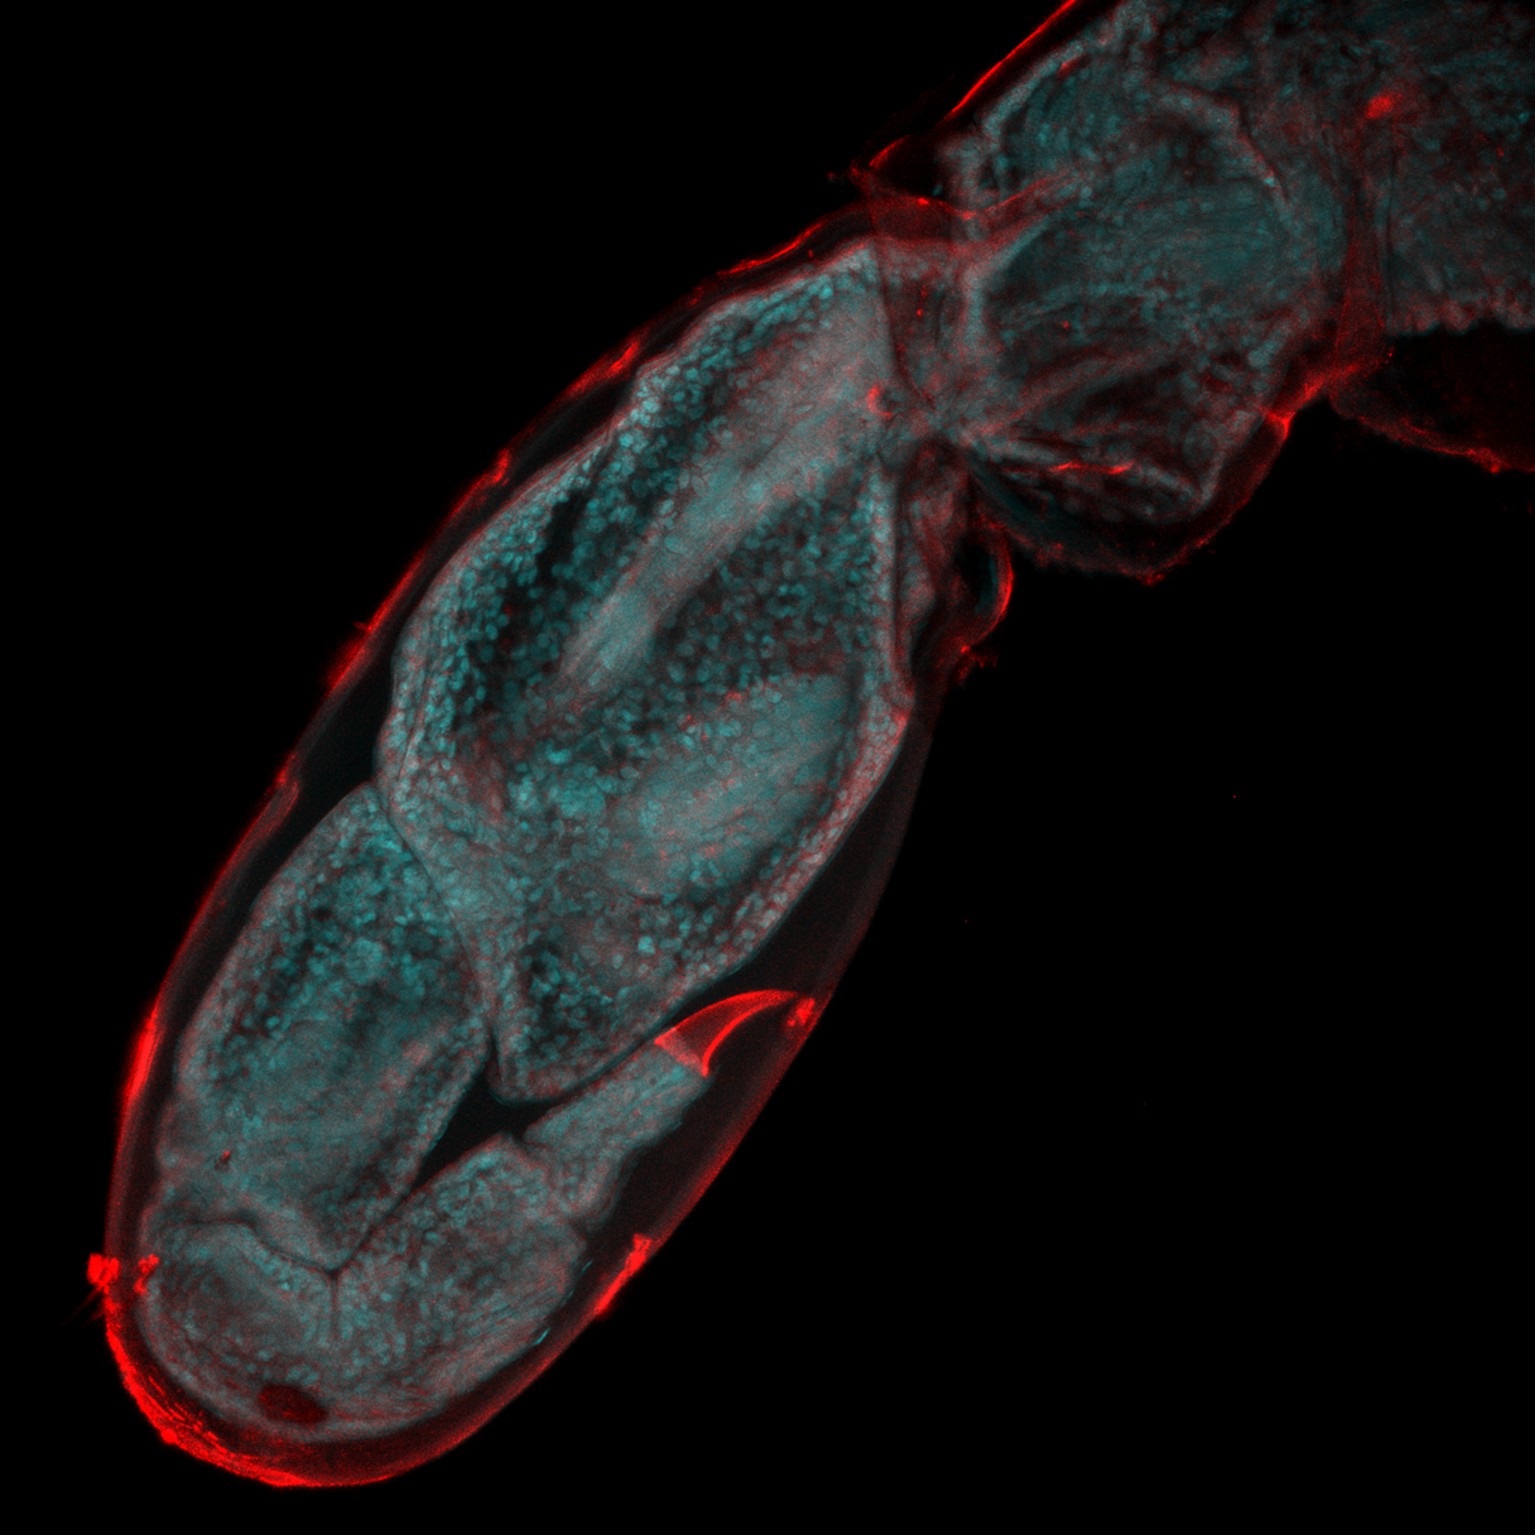 Imagen de la regeneración de una pata en un crustáceo